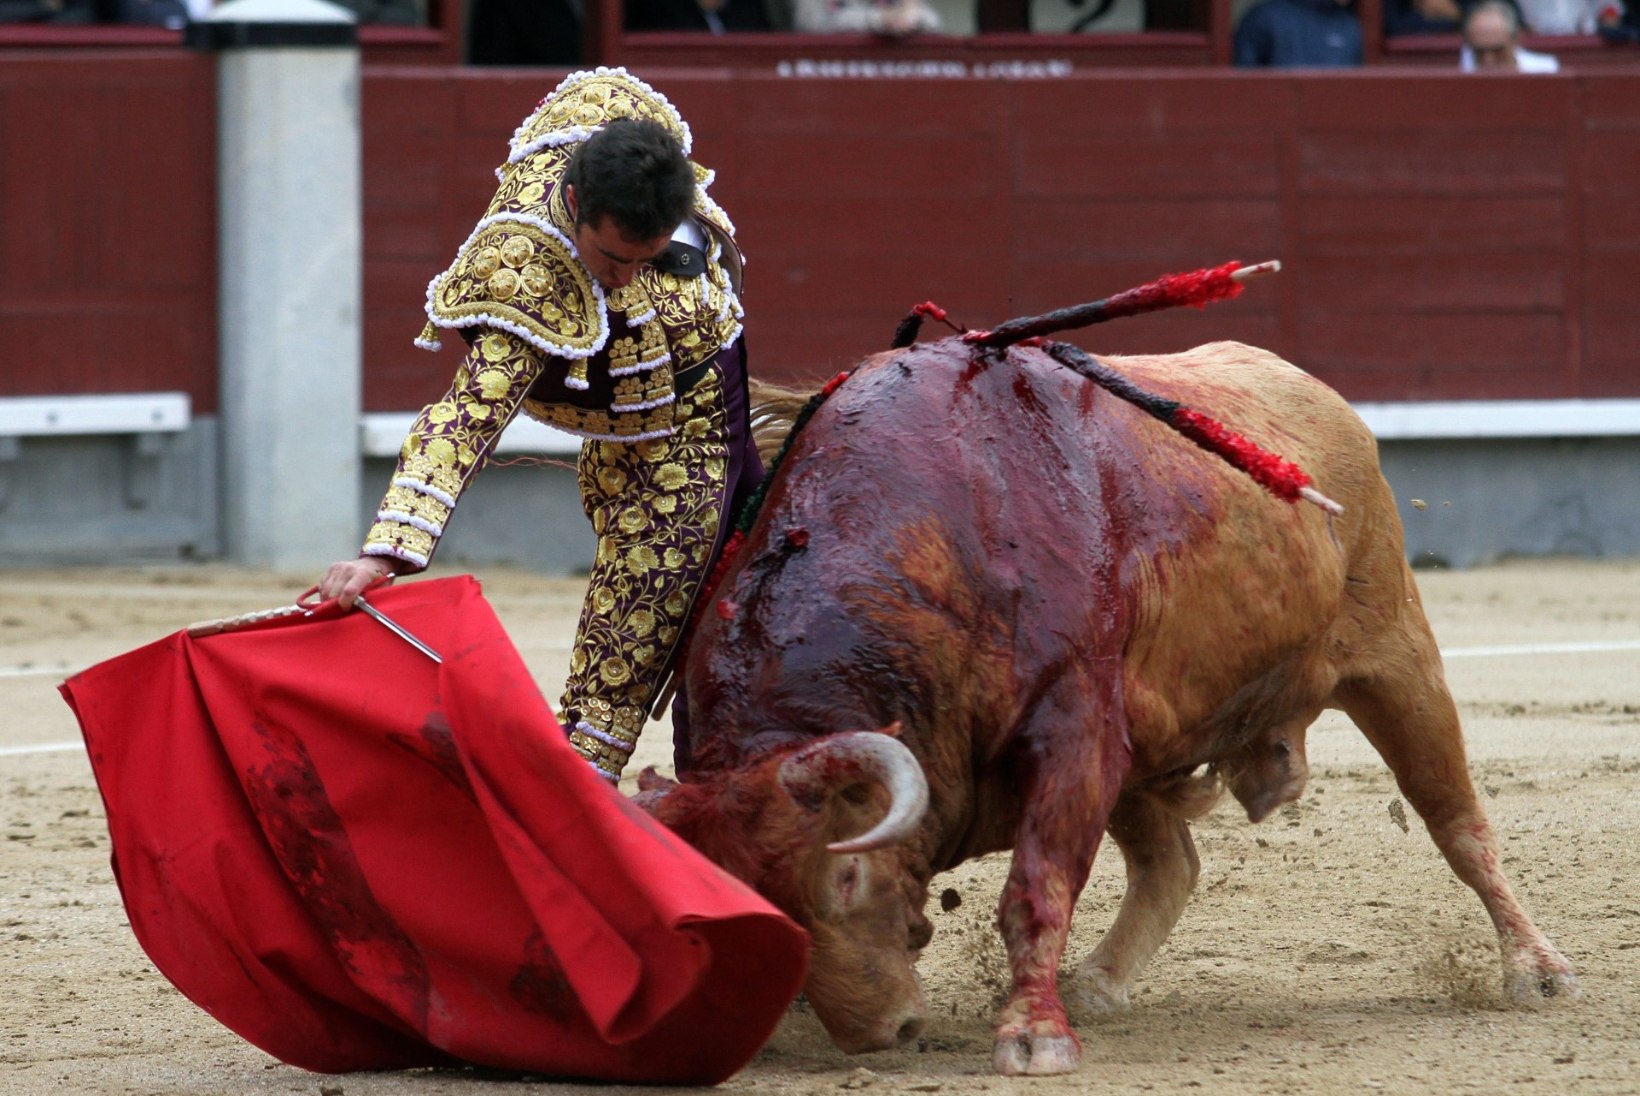 FOTOD: Madridis said matadoorid härgadelt räsida